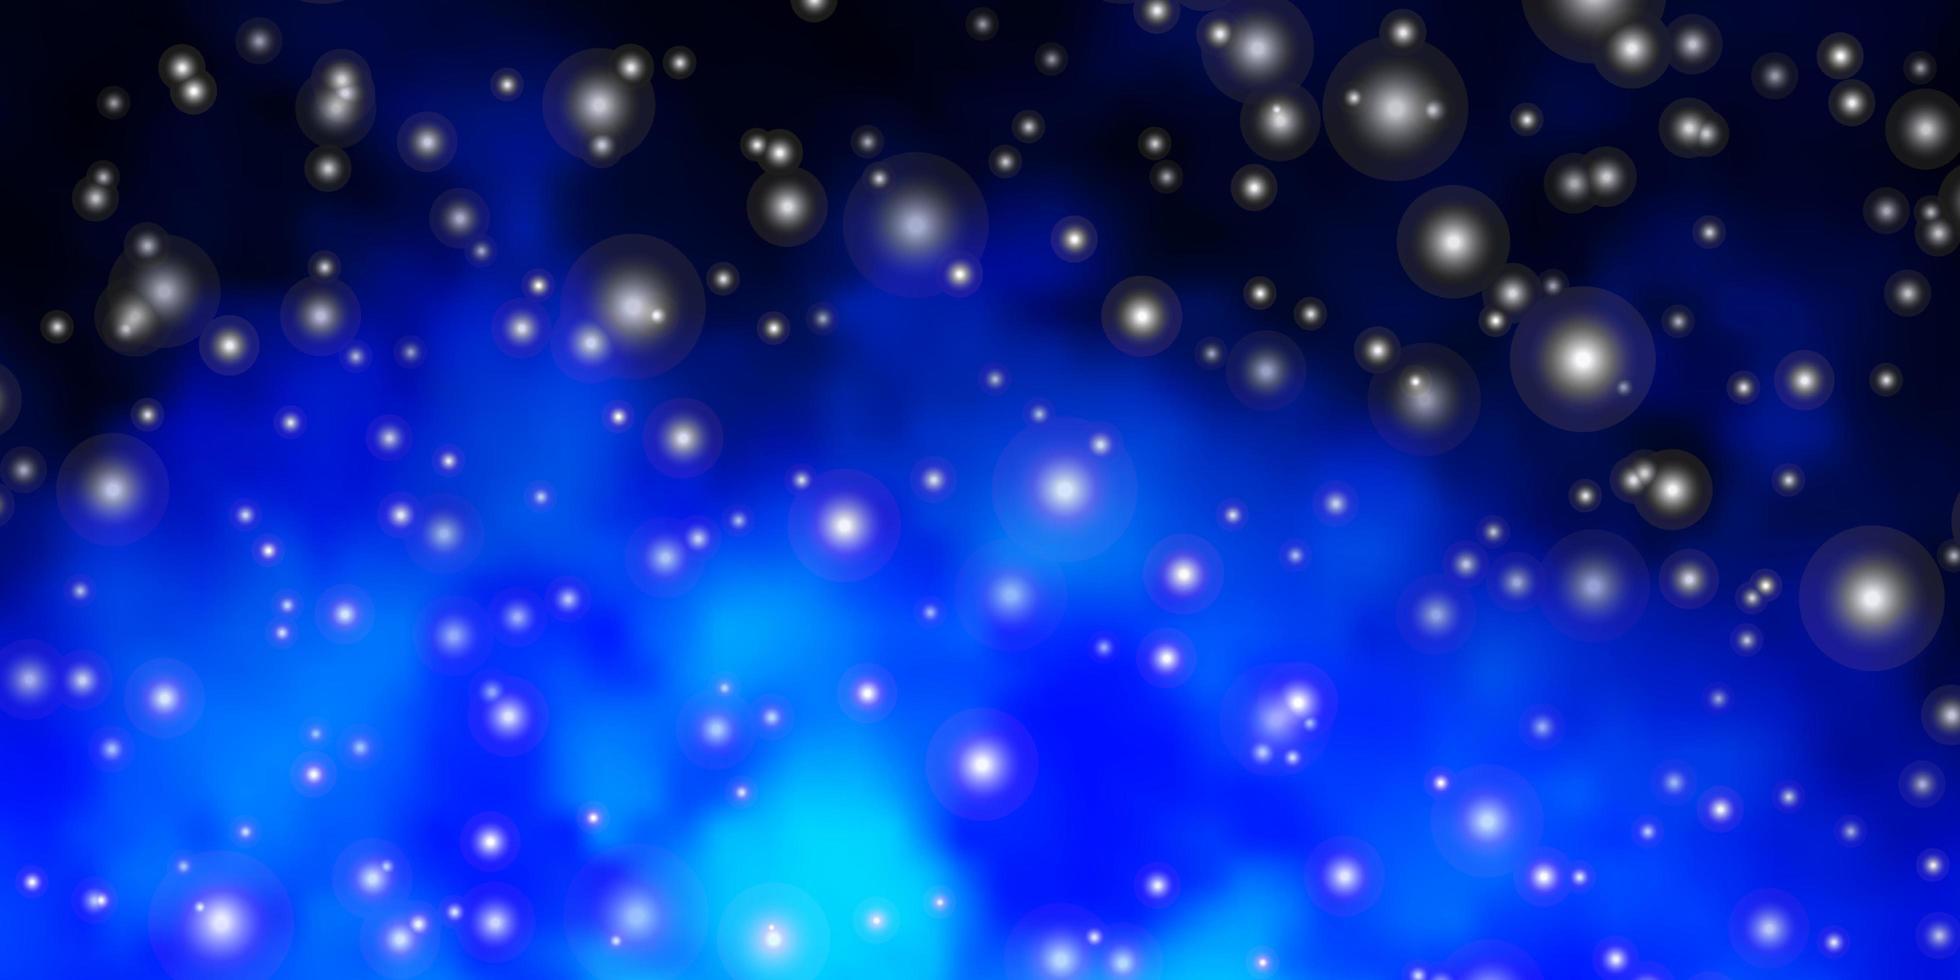 padrão de vetor azul escuro com estrelas abstratas. ilustração abstrata geométrica moderna com estrelas. design para a promoção de seus negócios.